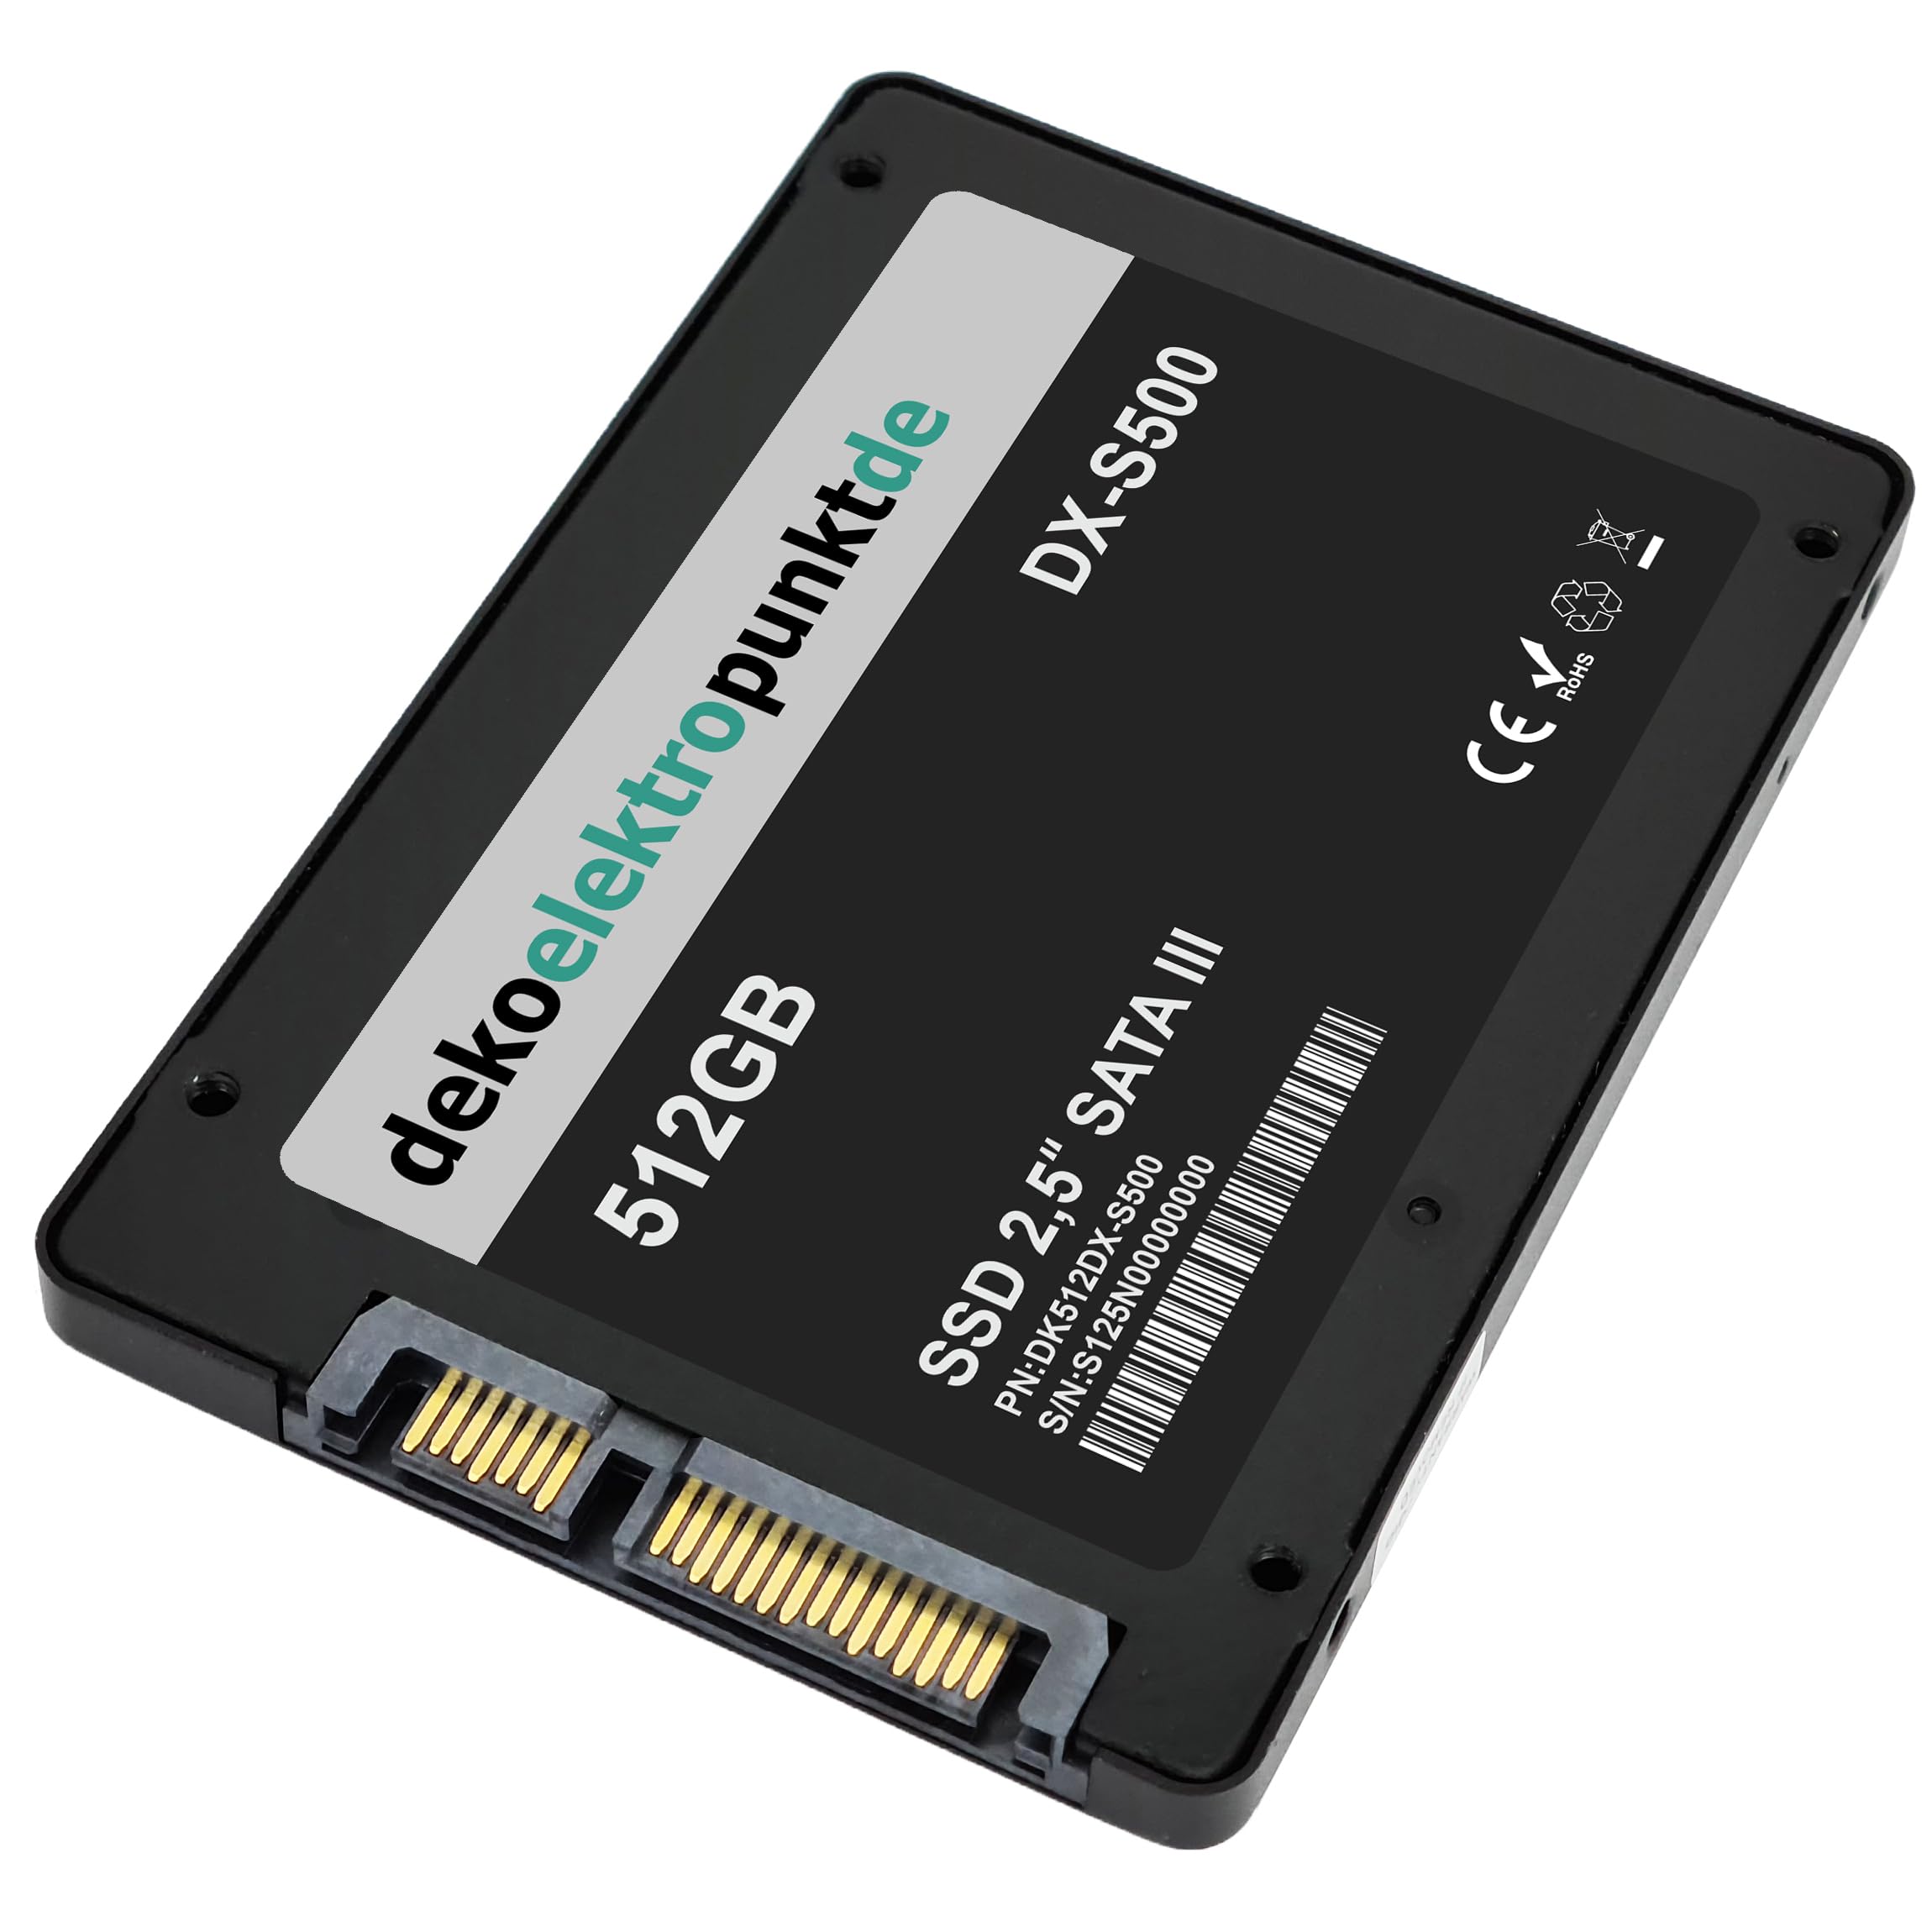 dekoelektropunktde 512GB SSD Festplatte passend für Sony VAIO VGN-S90S, Alternatives Ersatzteil, SATA3 Solid State Drive